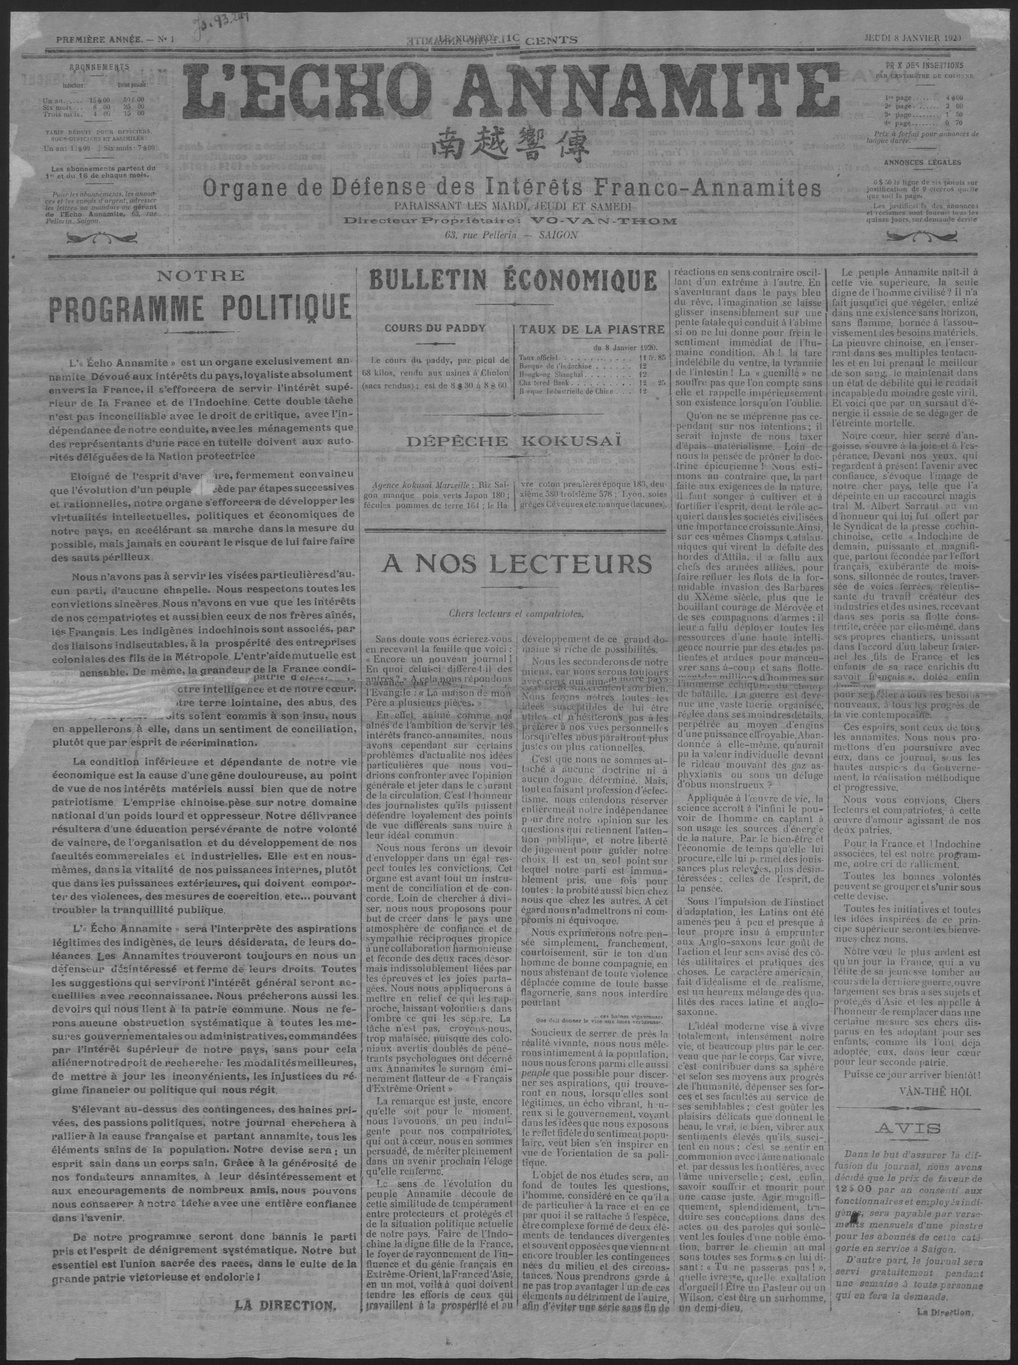 Báo chí Nam kỳ đầu thế kỷ 20: 'L’Écho Annamite' và 'La Tribune Indigène' một trăm năm trước - ảnh 1